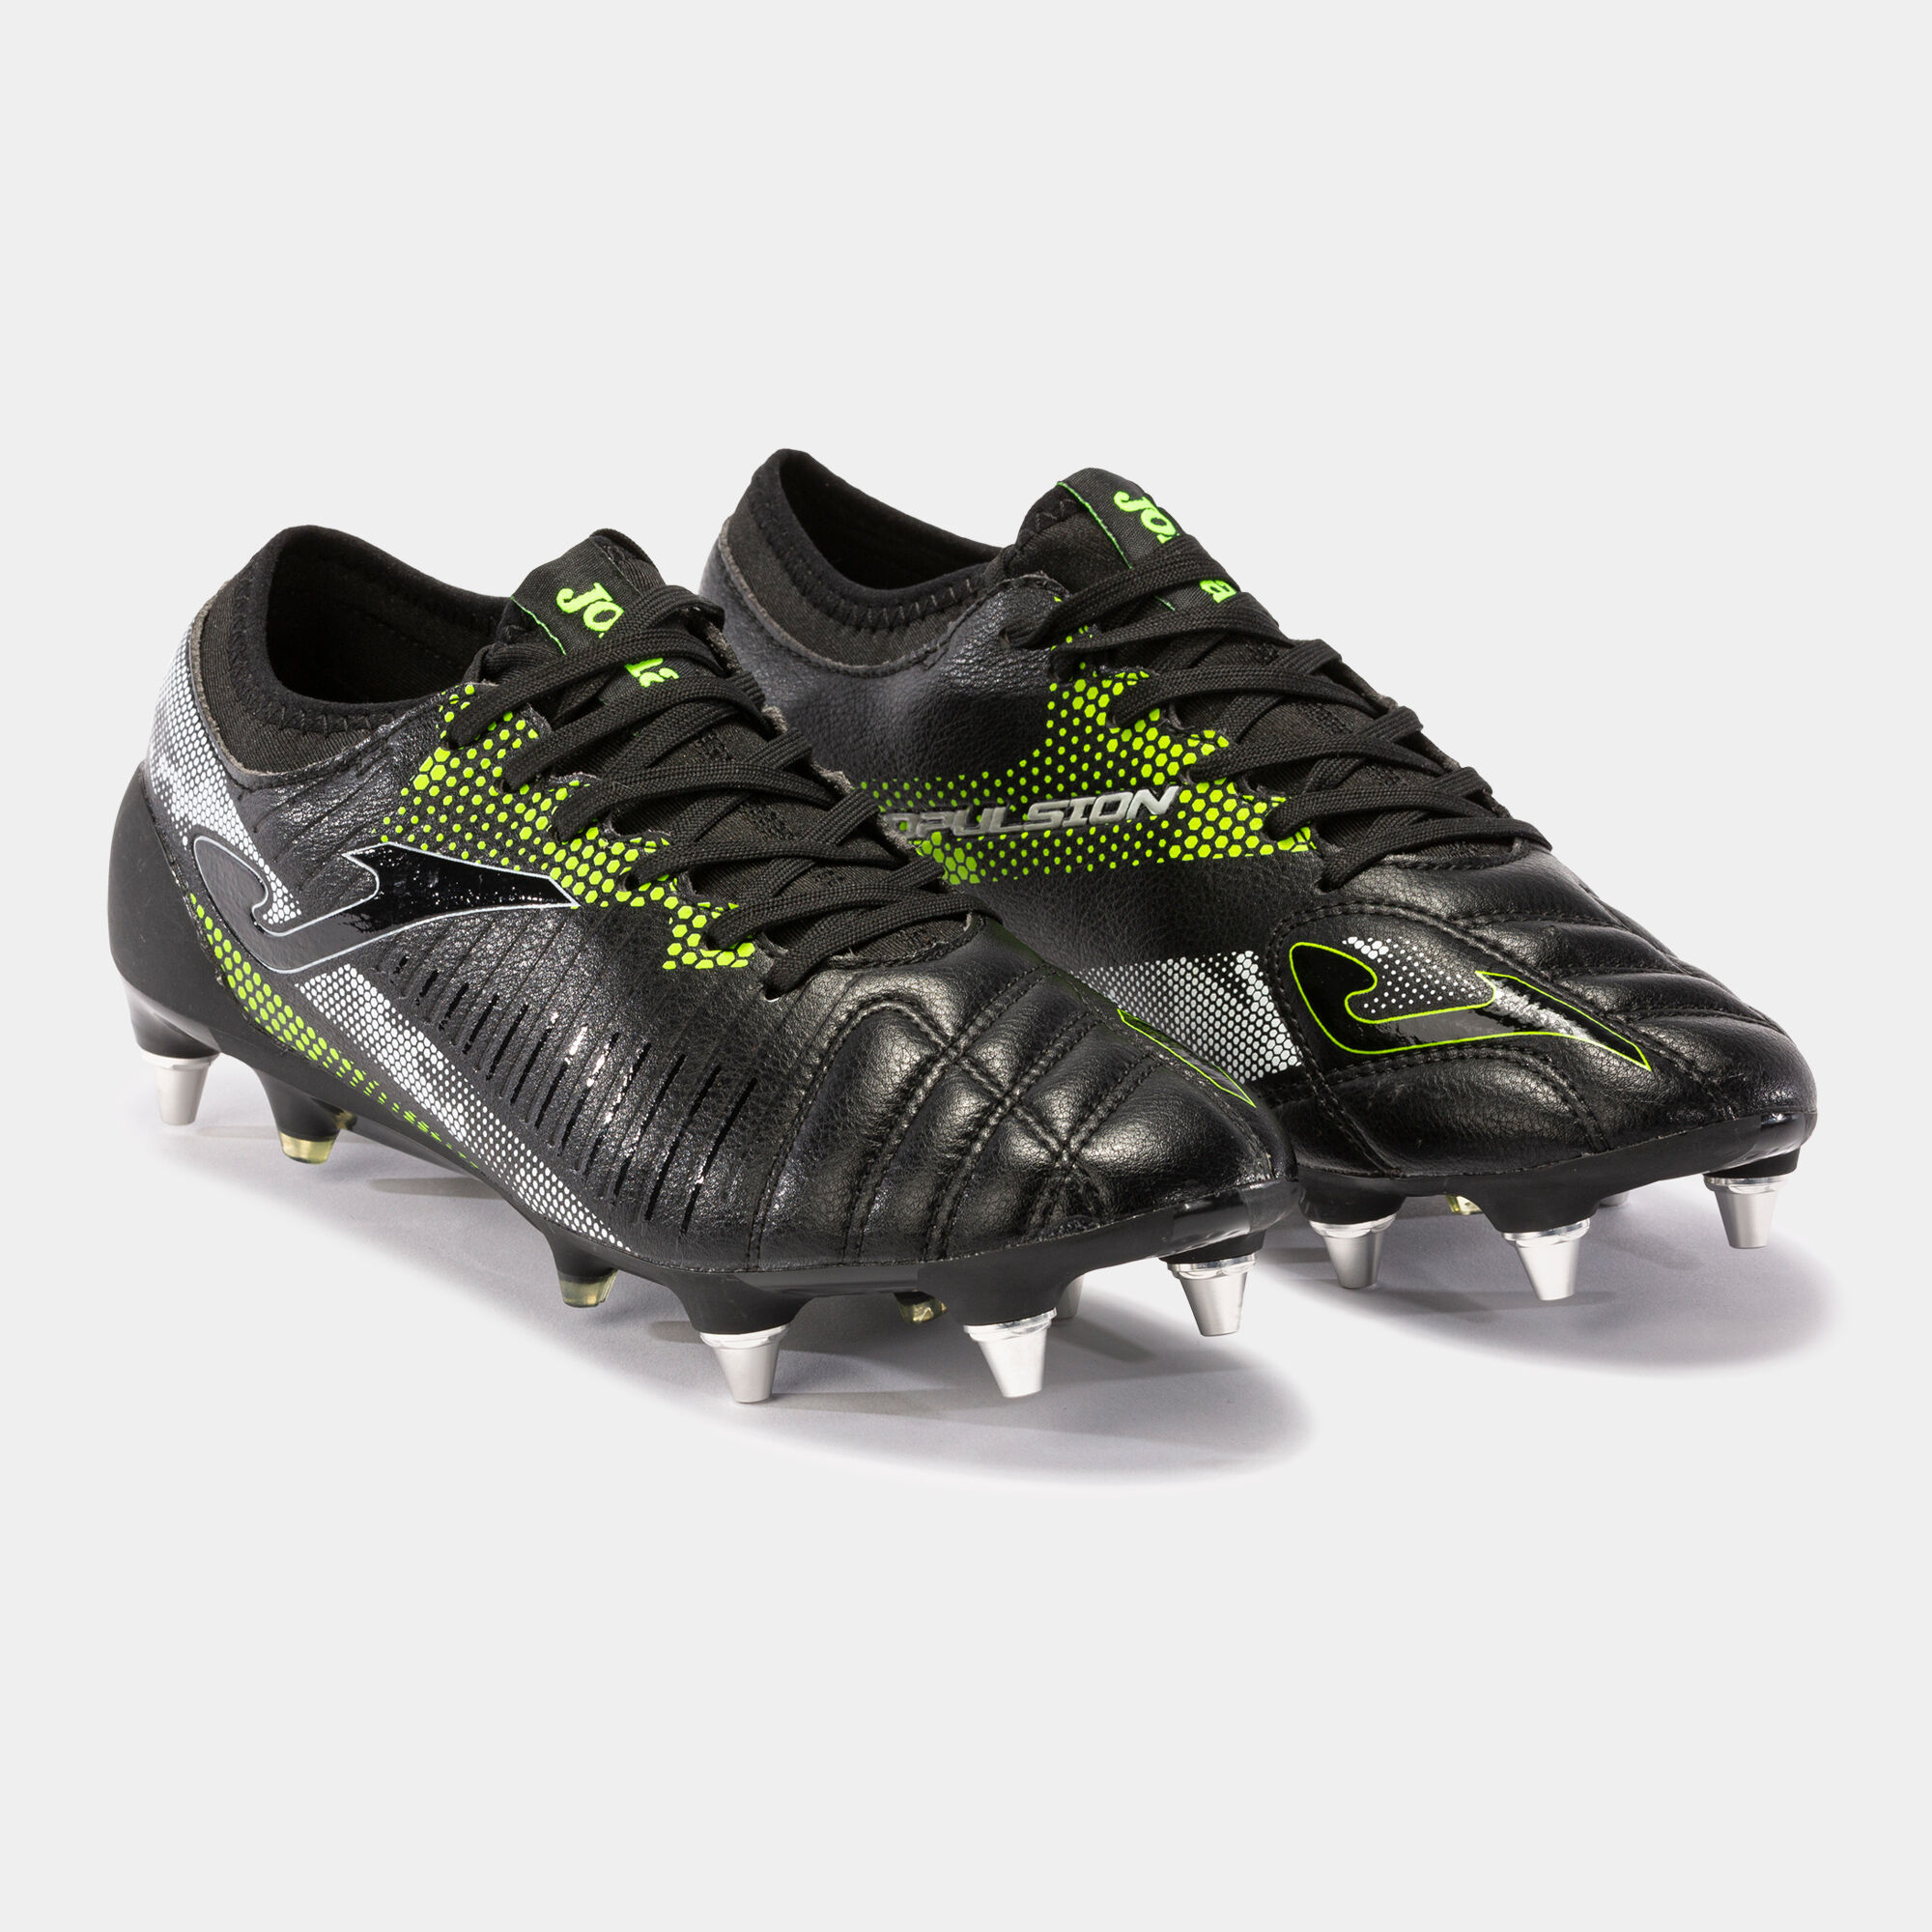 Buty piłkarskie Propulsion Cup 21 miękkie podłoże SG czarny fluorescencyjny zólty